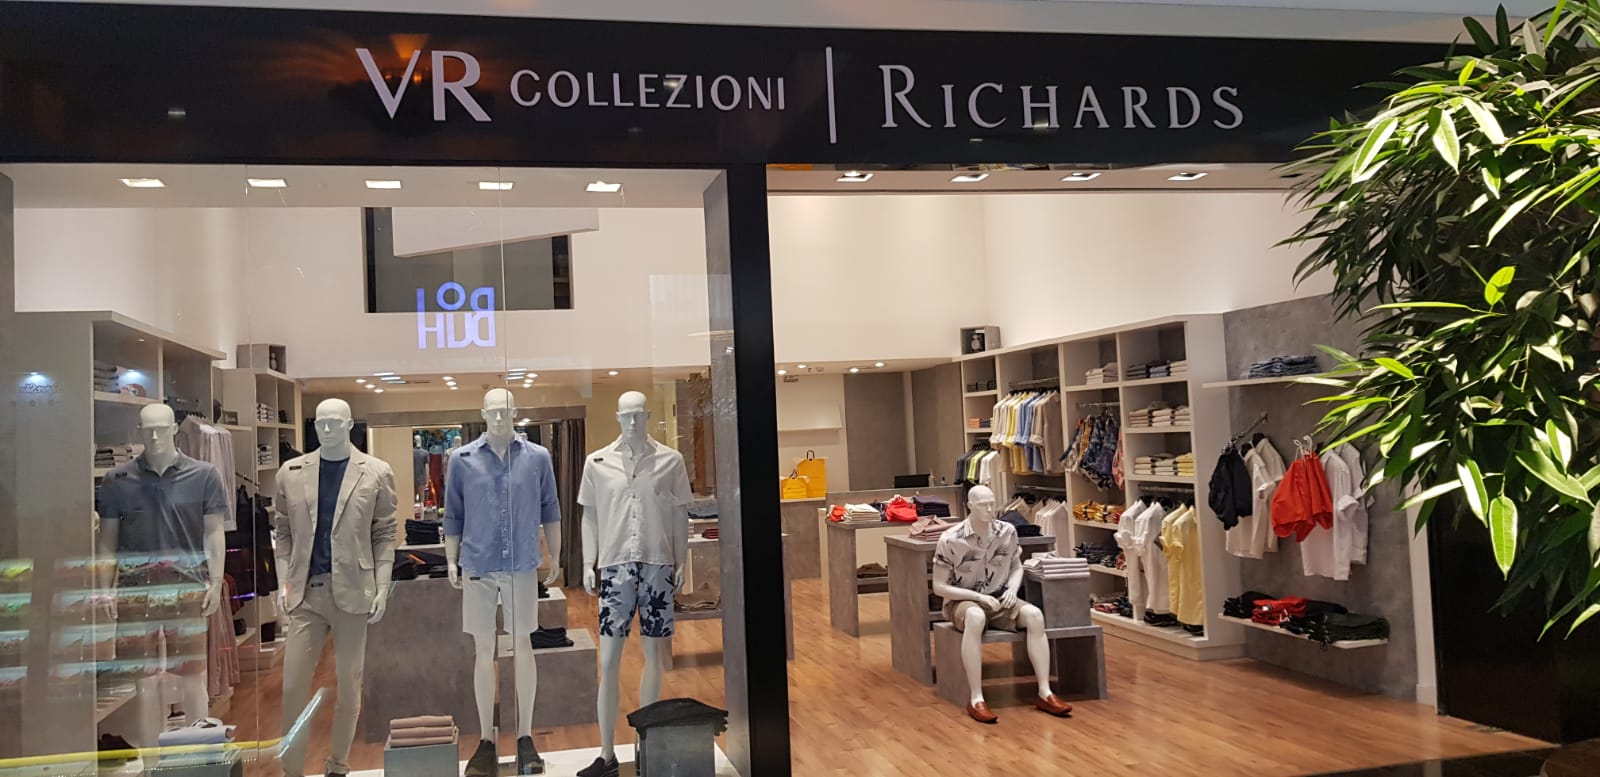 VR Collezioni Richards é uma loja especializada em roupas masculinas